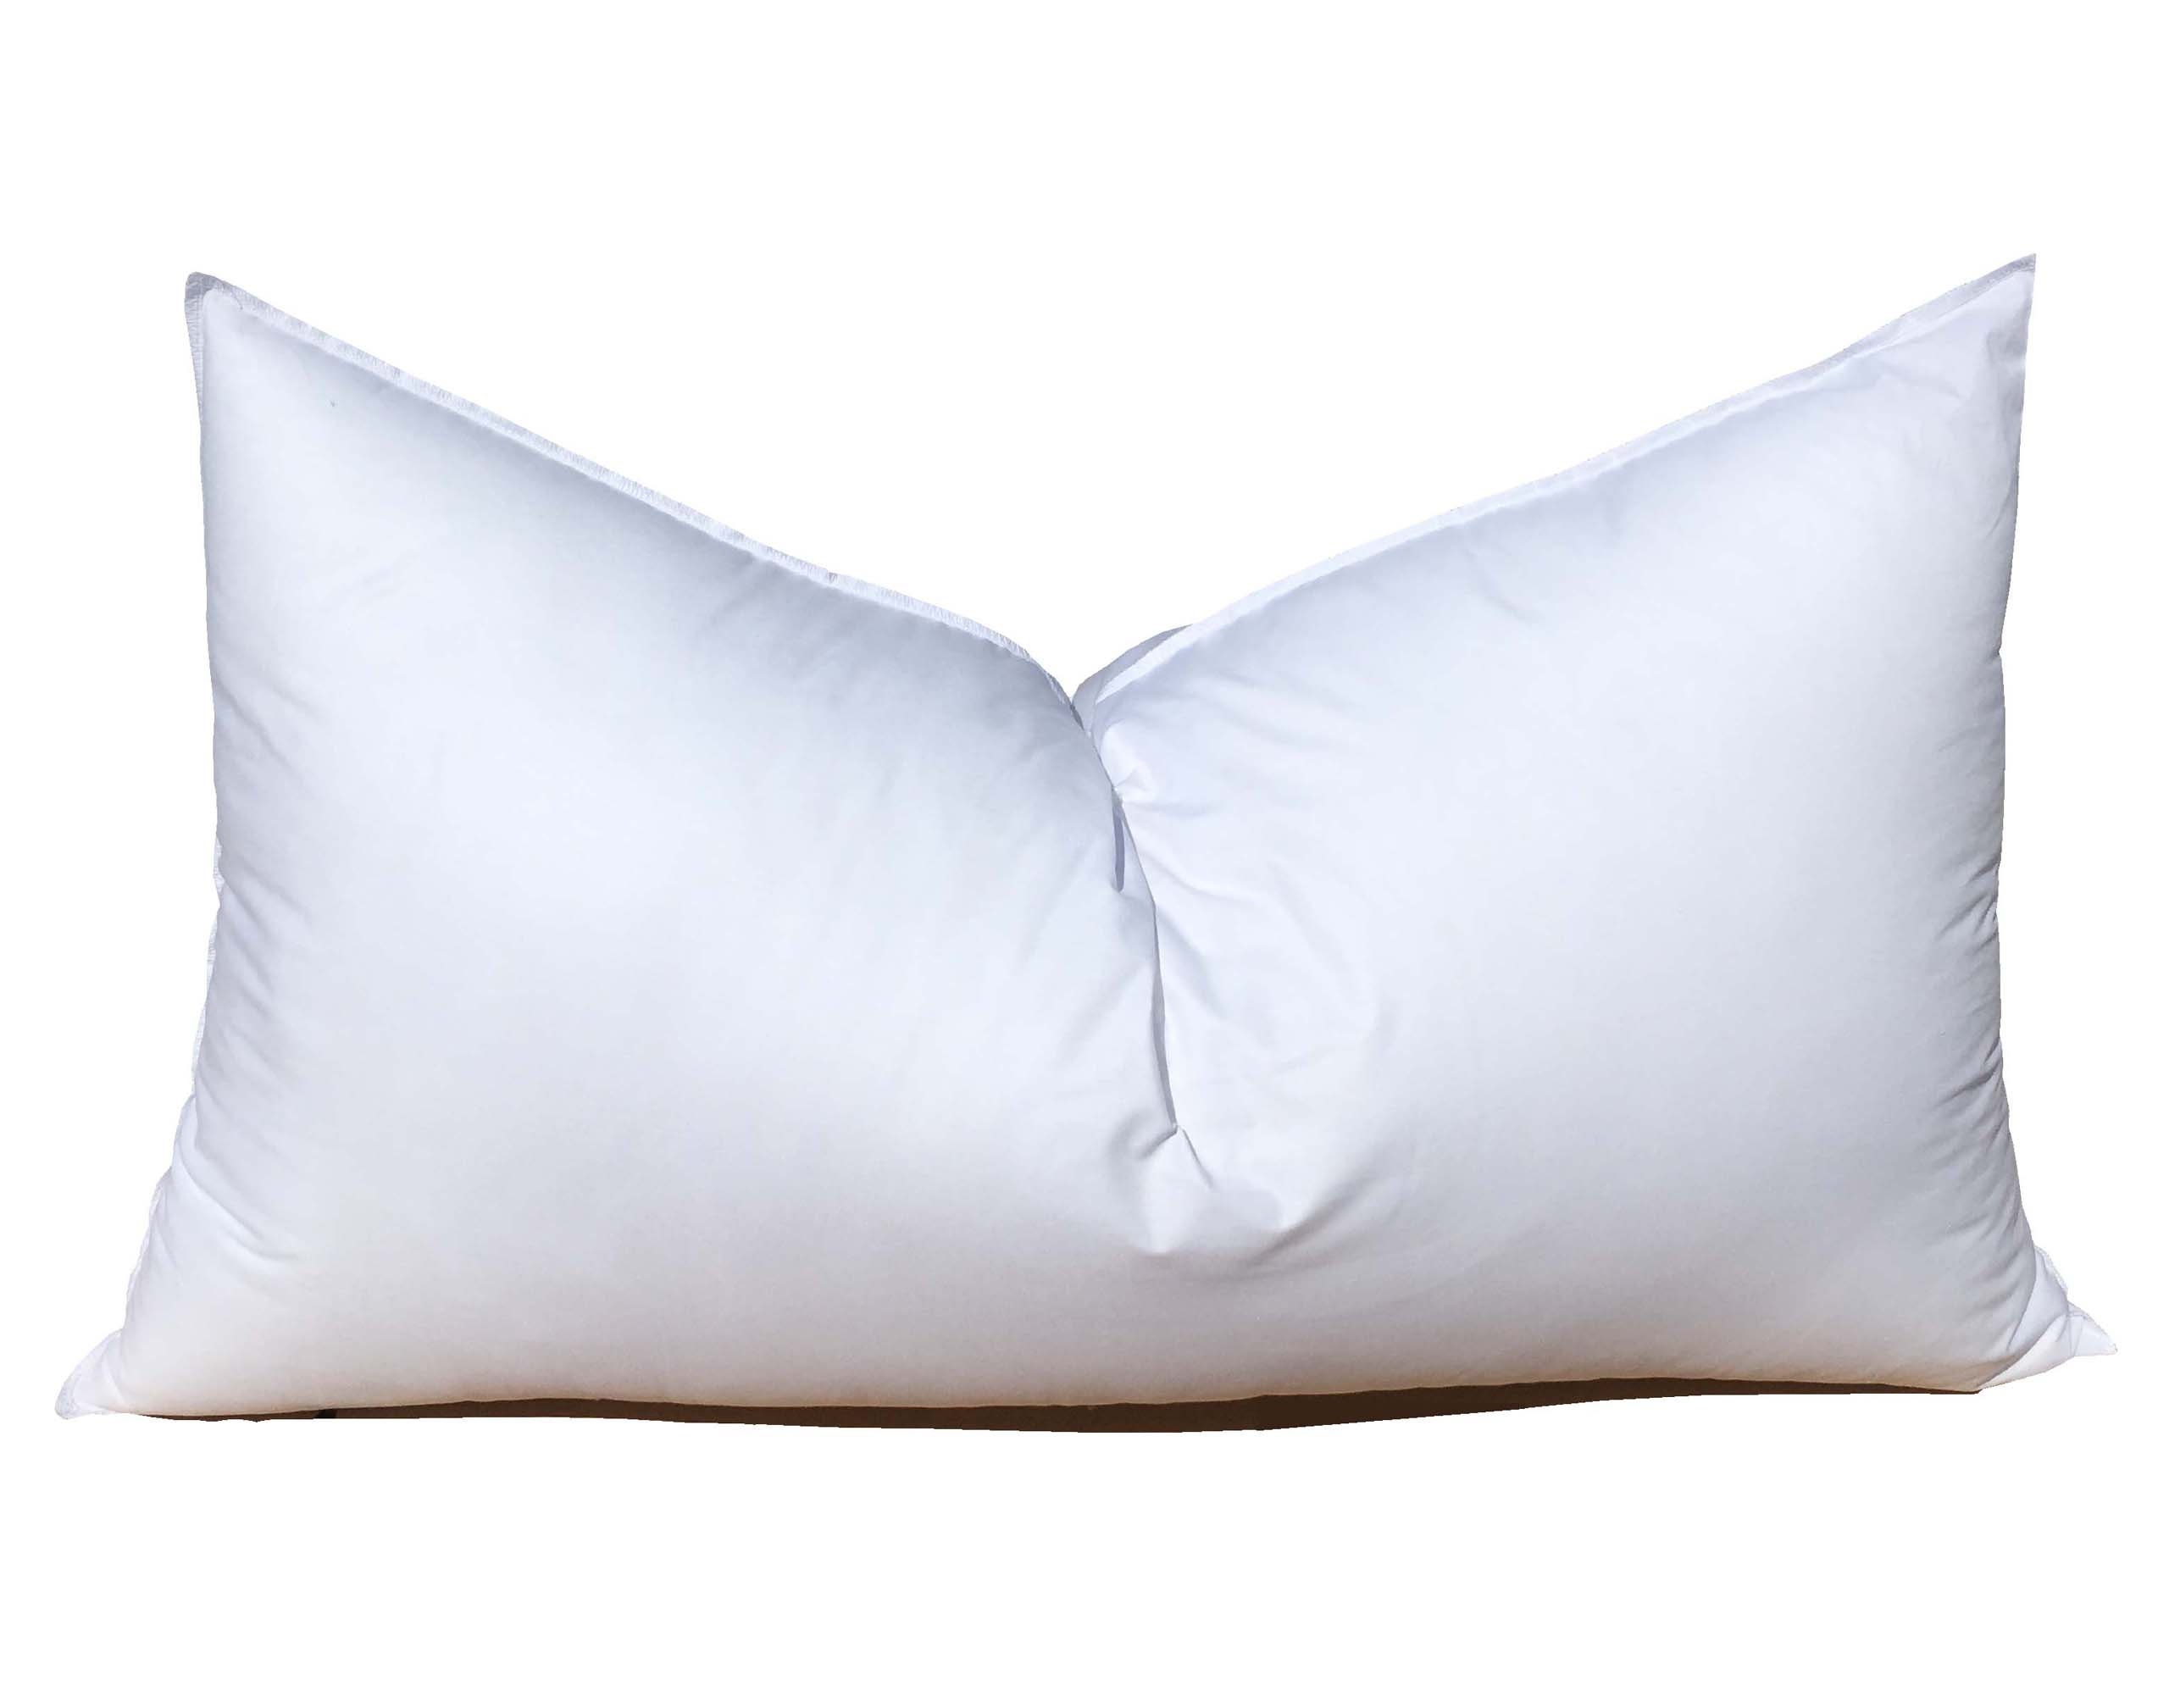 Emolli Decorative Pillow Insert 2 pack. 18*18 throw pillow